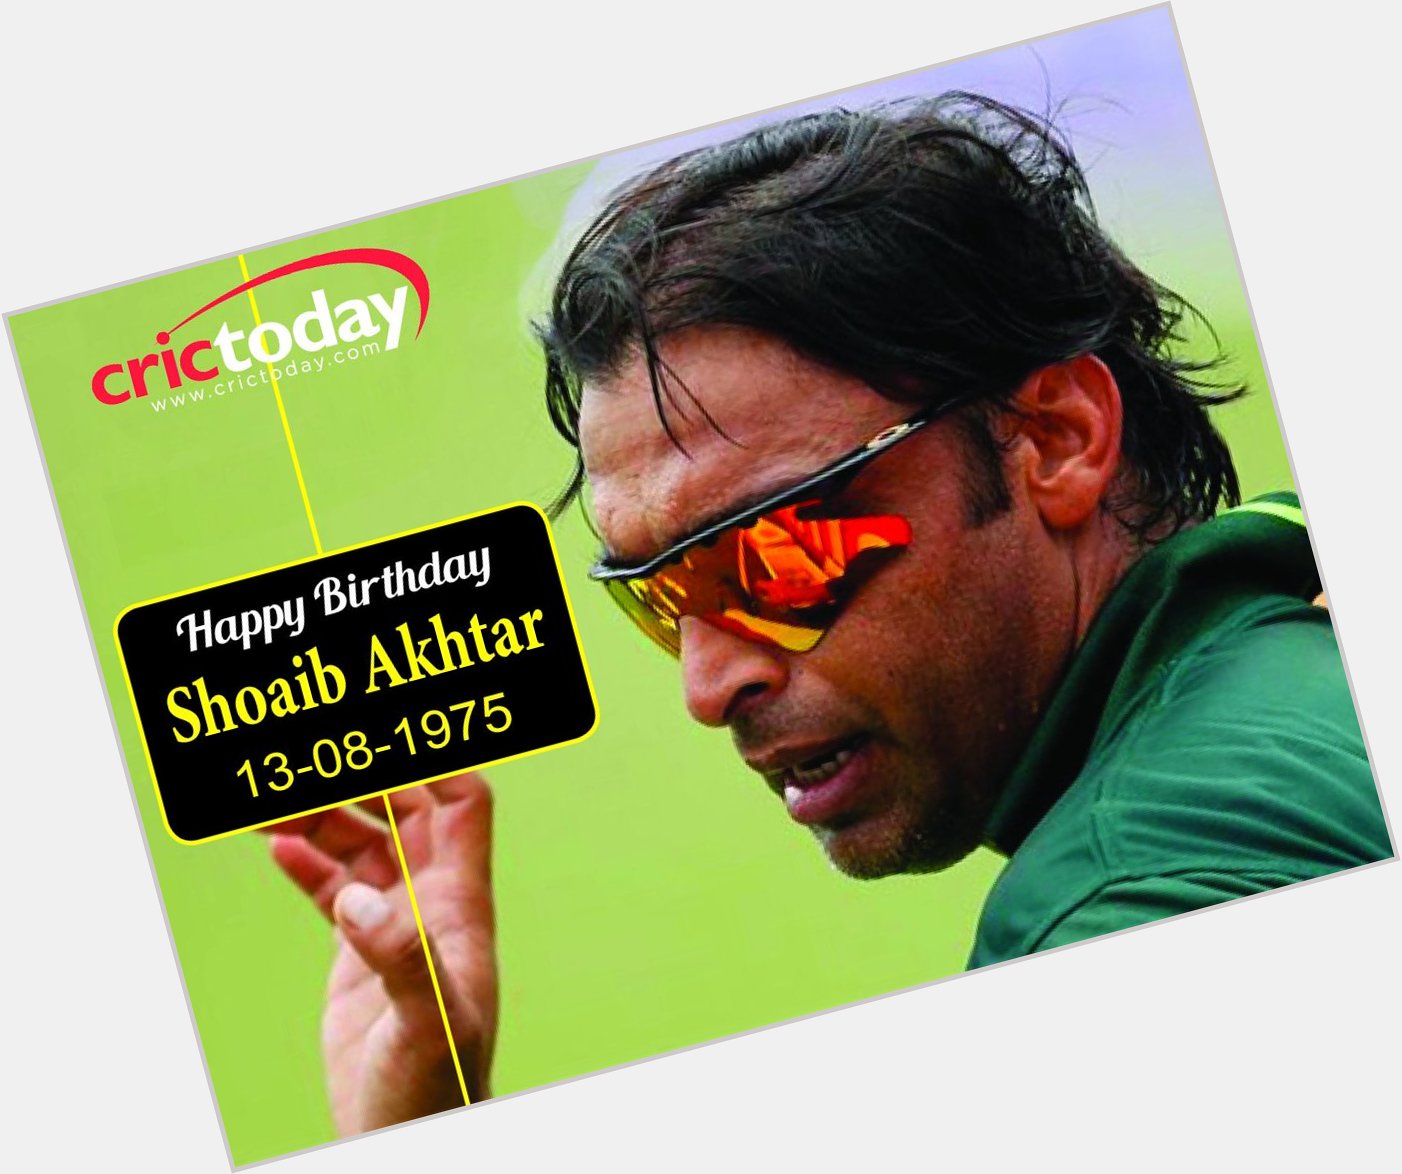 Wishing Shoaib Akhtar a very happy birthday..... 